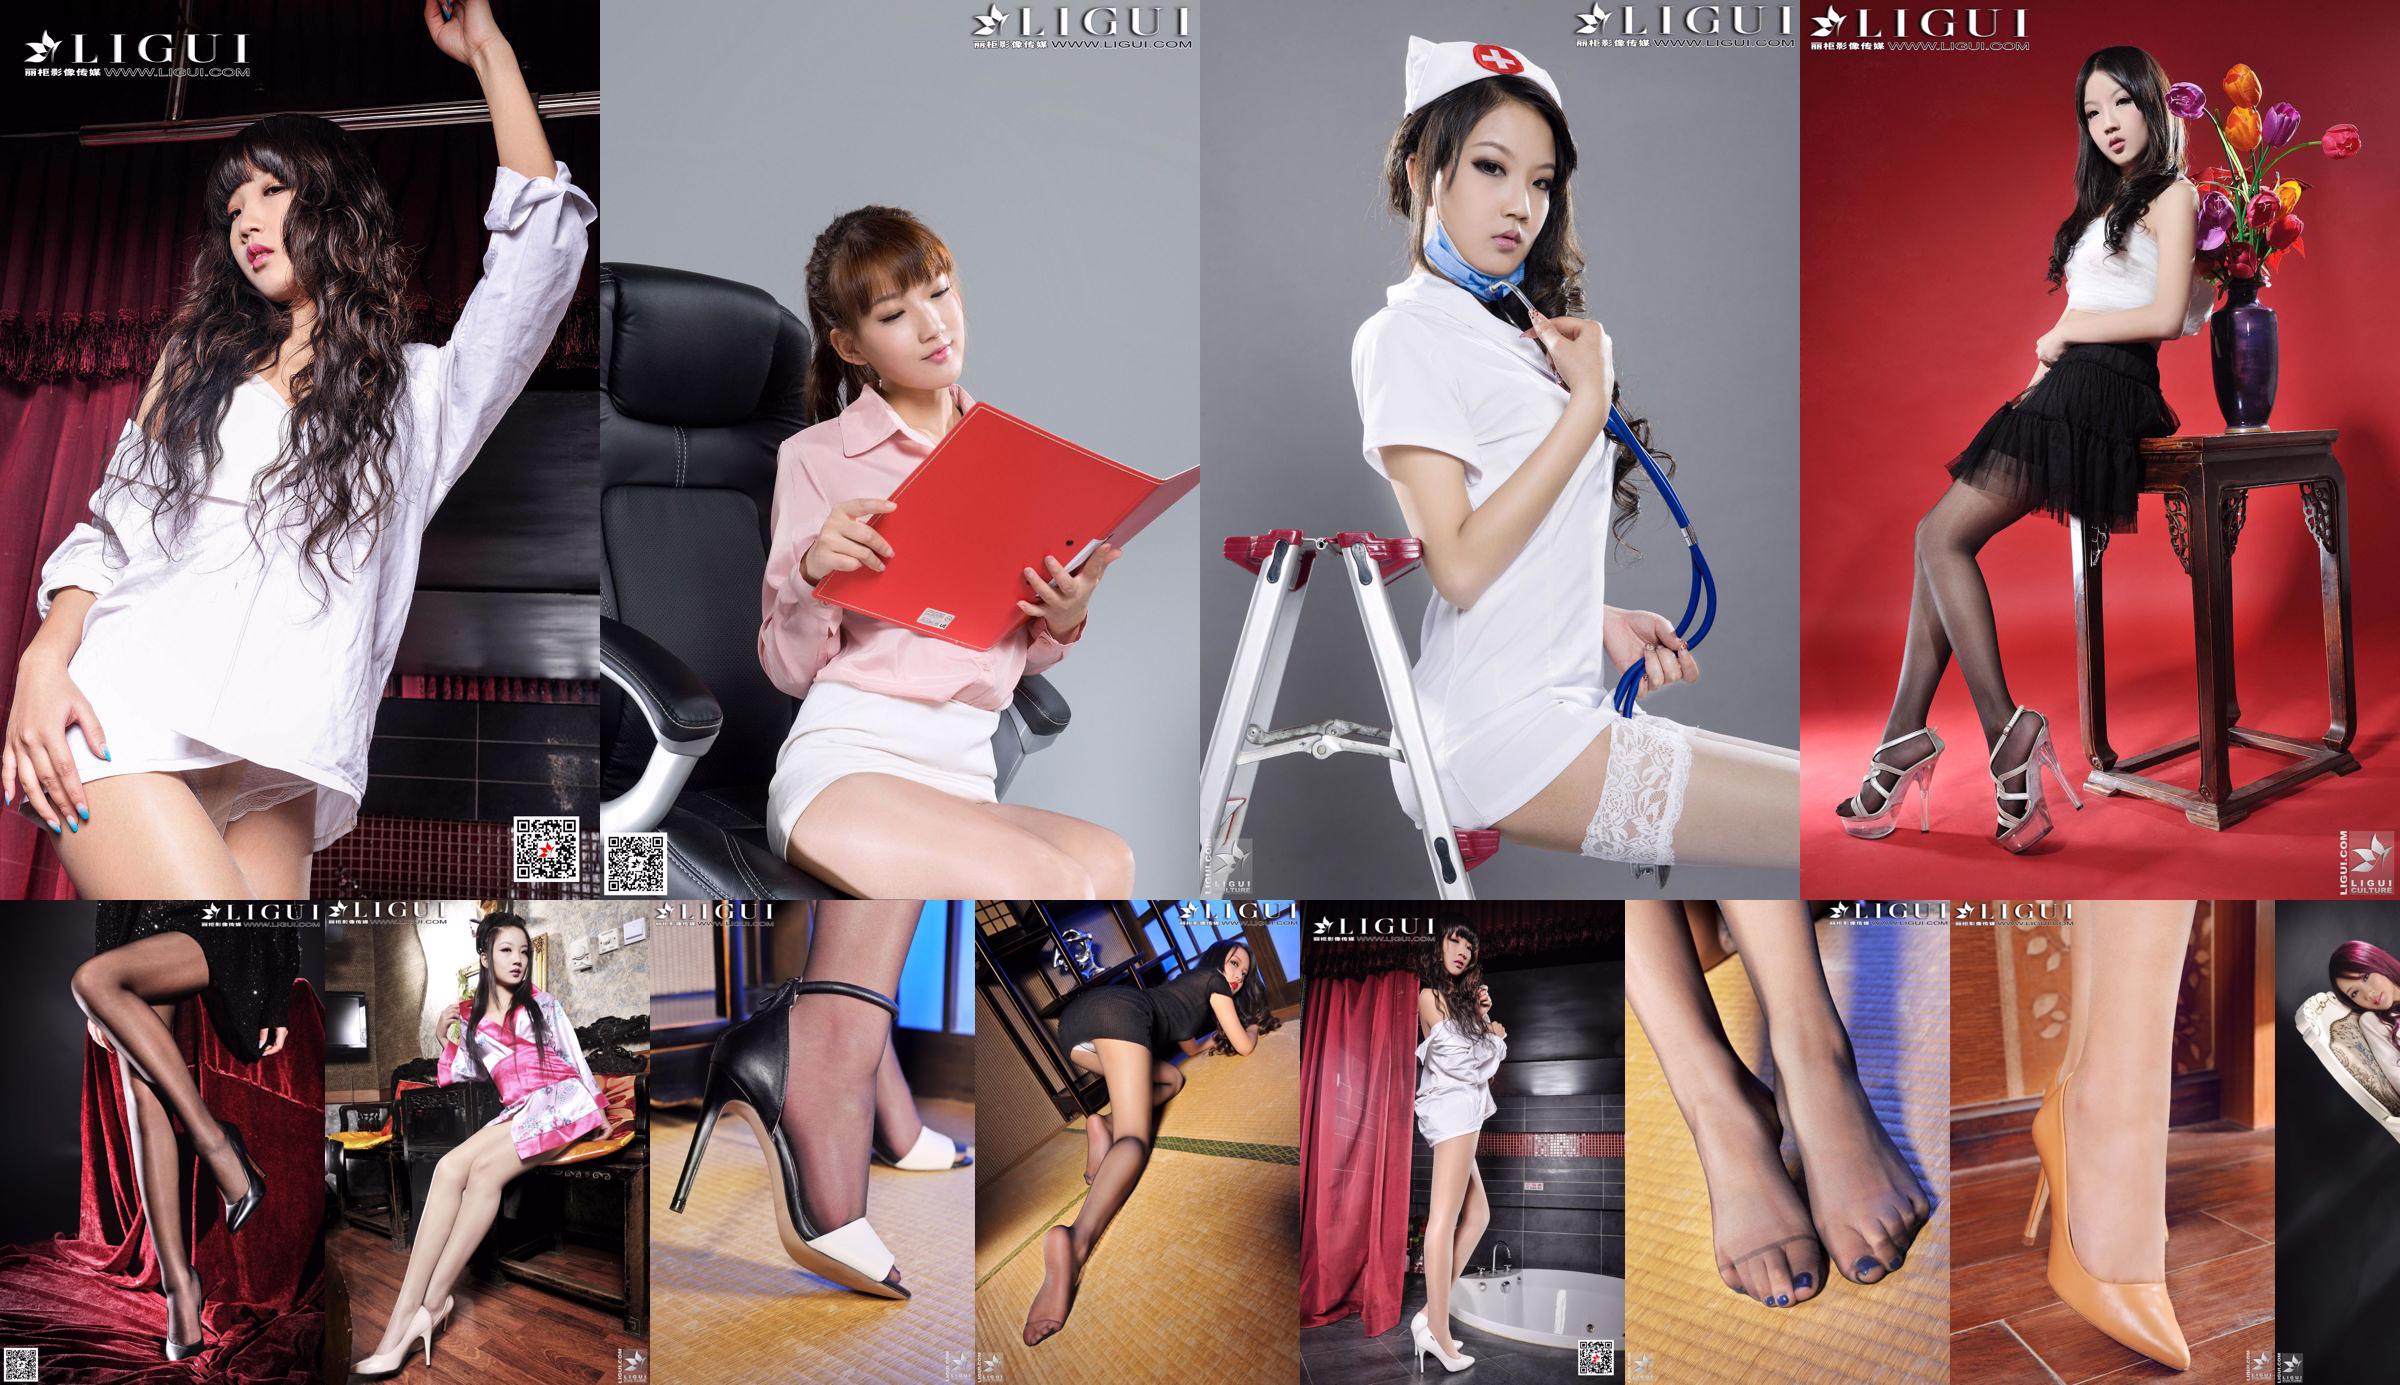 [丽 柜 LiGui] Model Si Qi's "Mooie mode-hotpants en meisje met hoge hakken" Compleet werk van mooie benen en jade voeten No.28fb9d Pagina 2